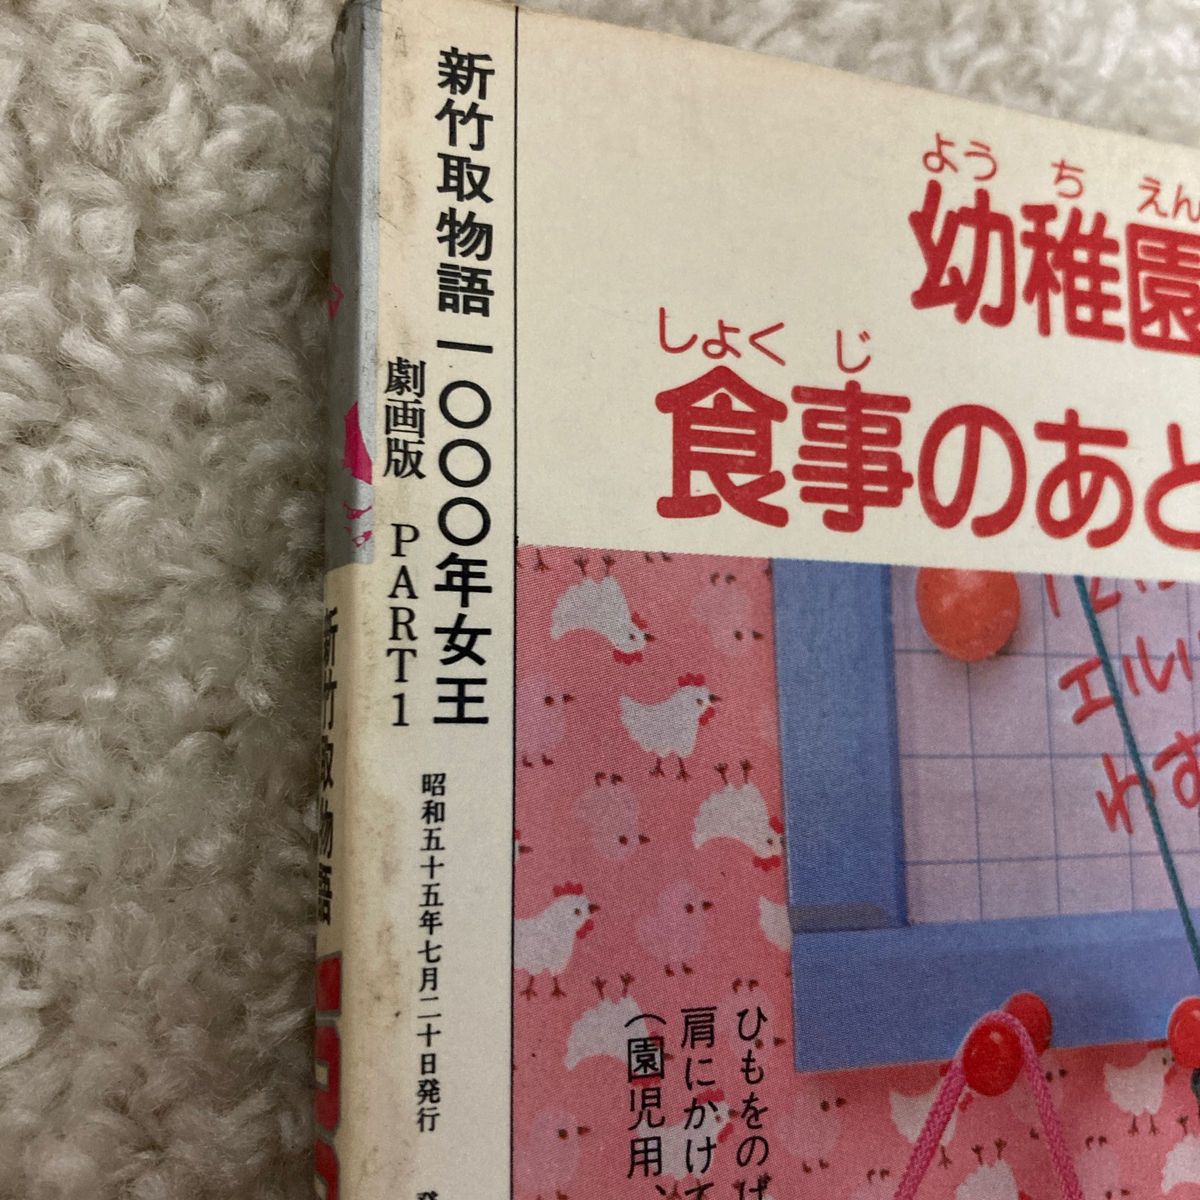 1000年女王 新竹取物語 松本零士 ワクワクコミックス サンケイ出版 